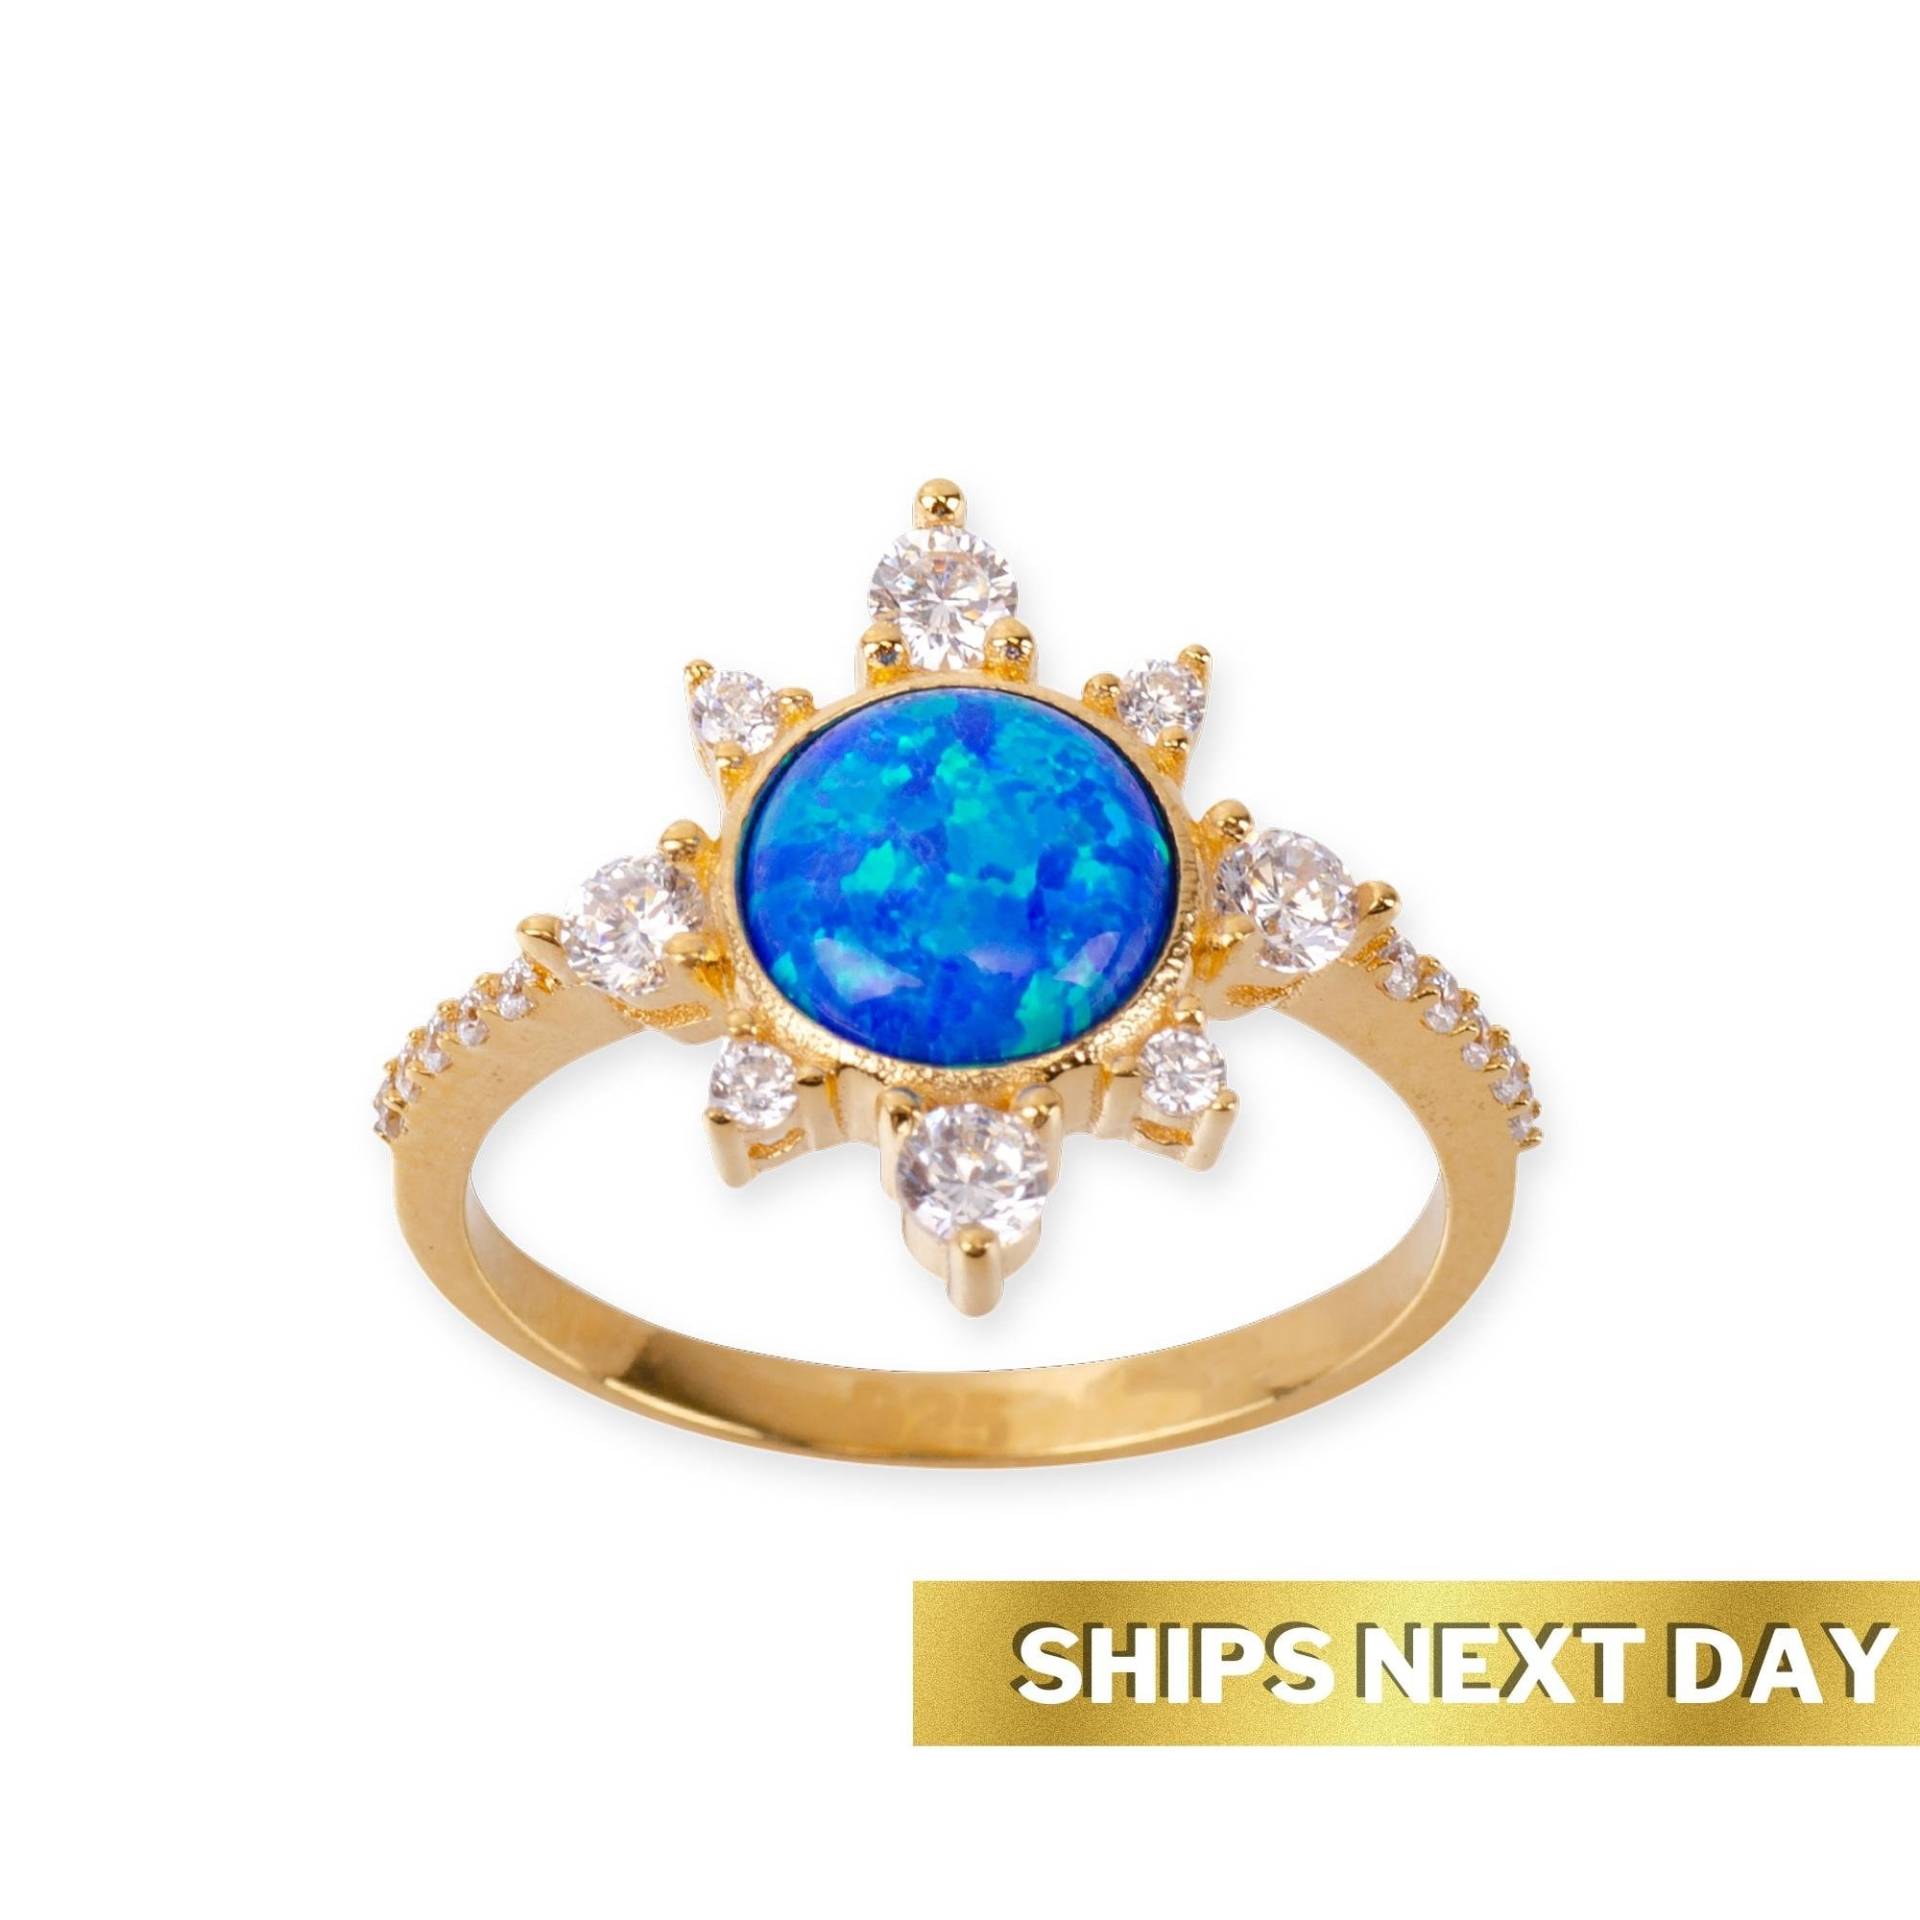 Sunshine Blauer Feuer Opal Ring, 24K Gold Vermeil Eleganter Ring Mit Edelstein, Statement Frauen Accessoires von womuse